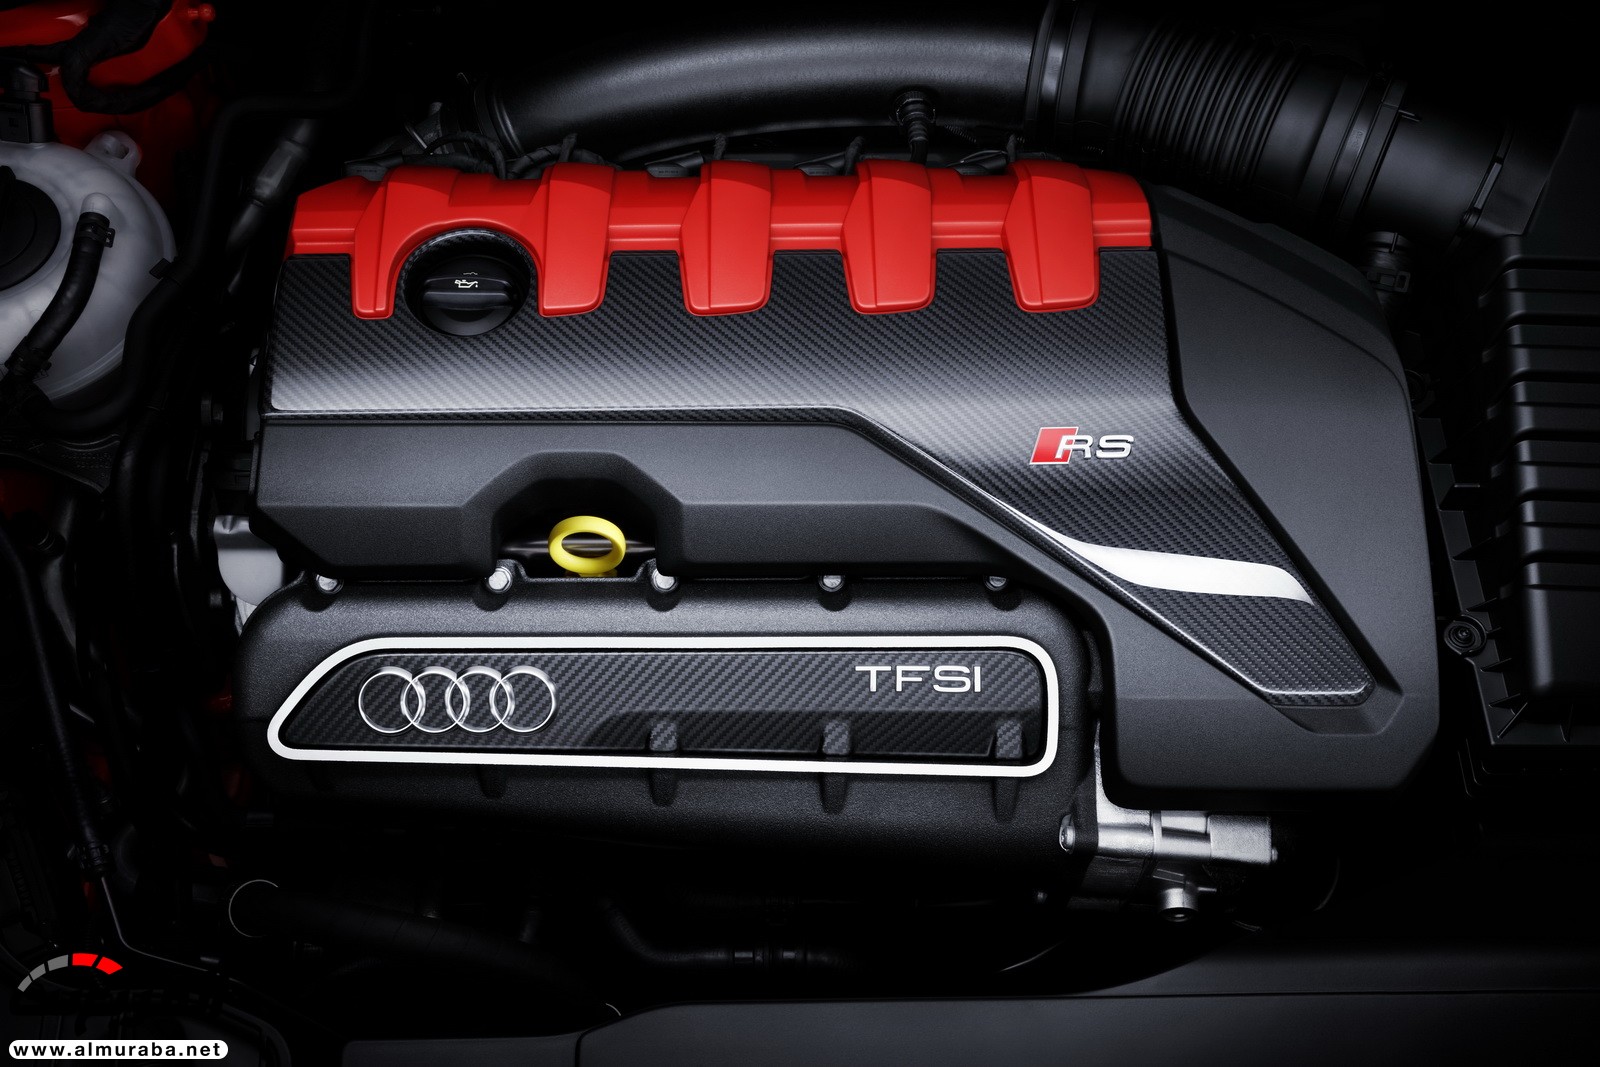 "أودي" تكشف عن RS3 الجديدة كليا 2018 بقوة 395 حصان Audi 46